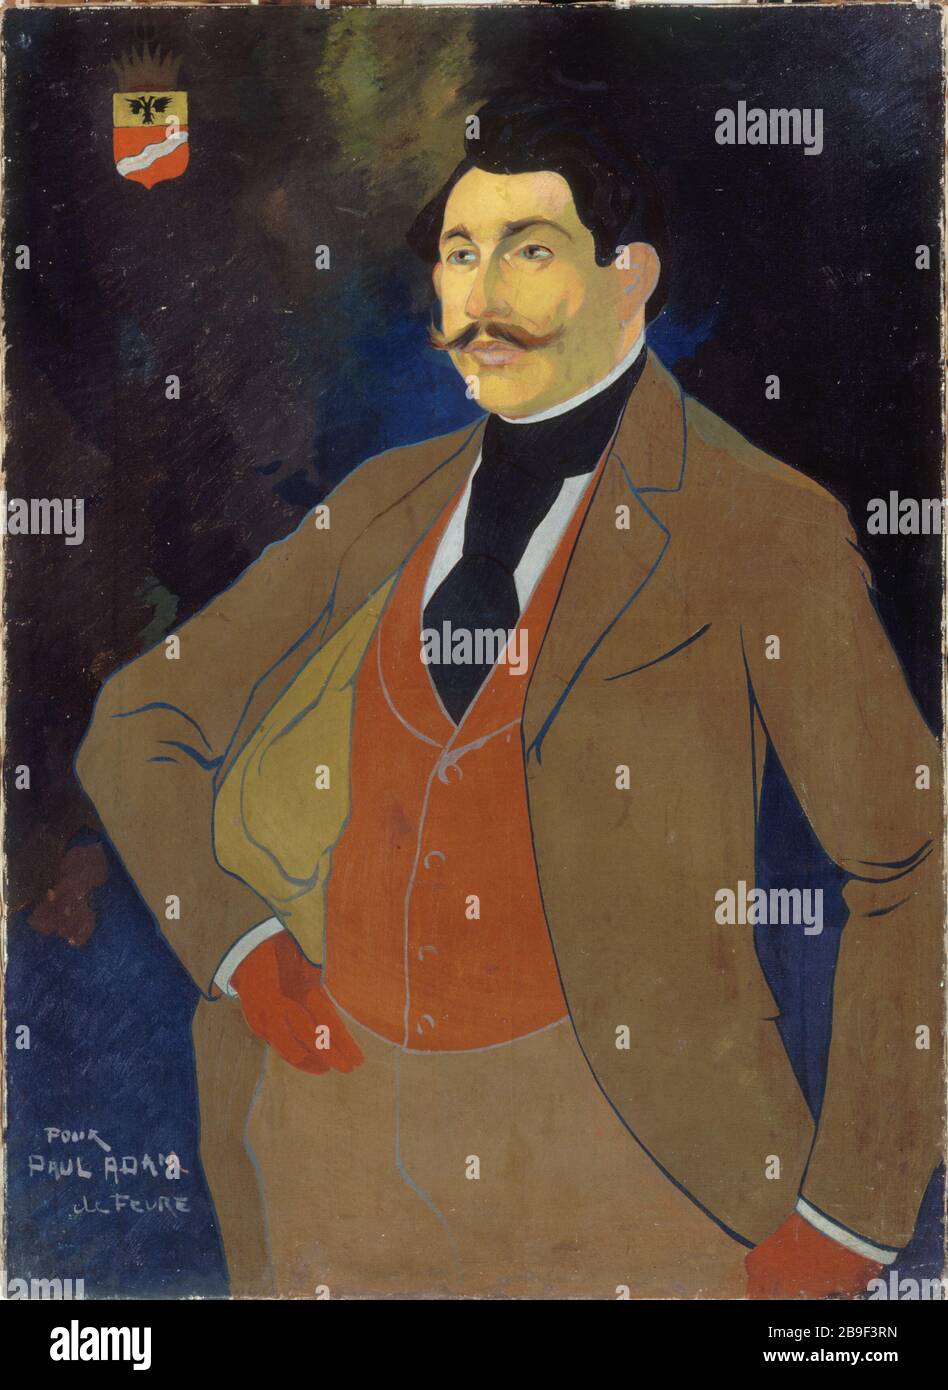 Paul Adam Georges de Feure (Georges Van Sluijters dit, 1988-1943). "Paul Adam (1865-1920), écrivain". Huile sur toile. Paris, musée Carnavalet. Stockfoto